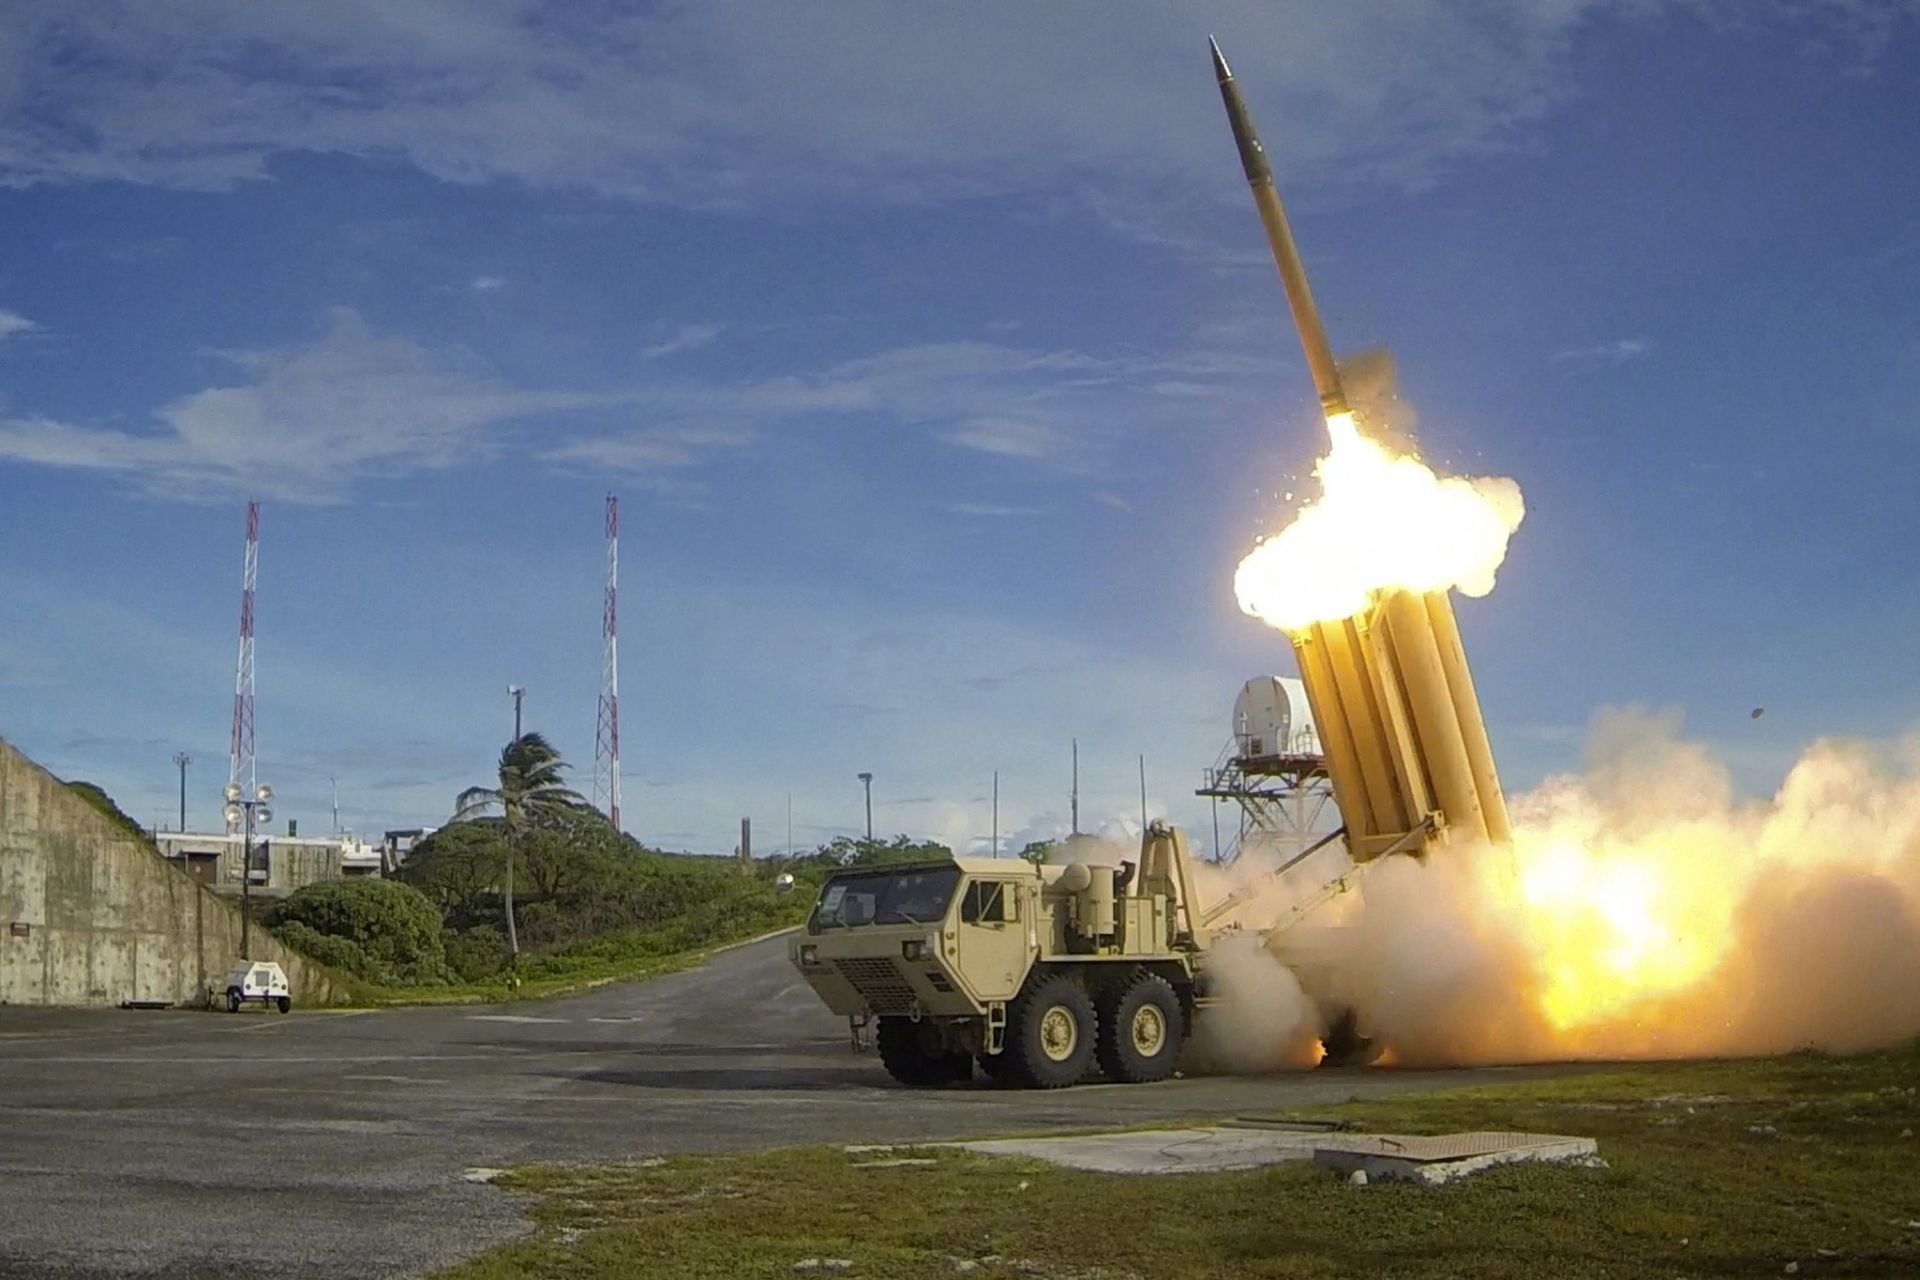 Sistema para derribar misiles balísticos, Terminal High Altitude Area Defense (THAAD)